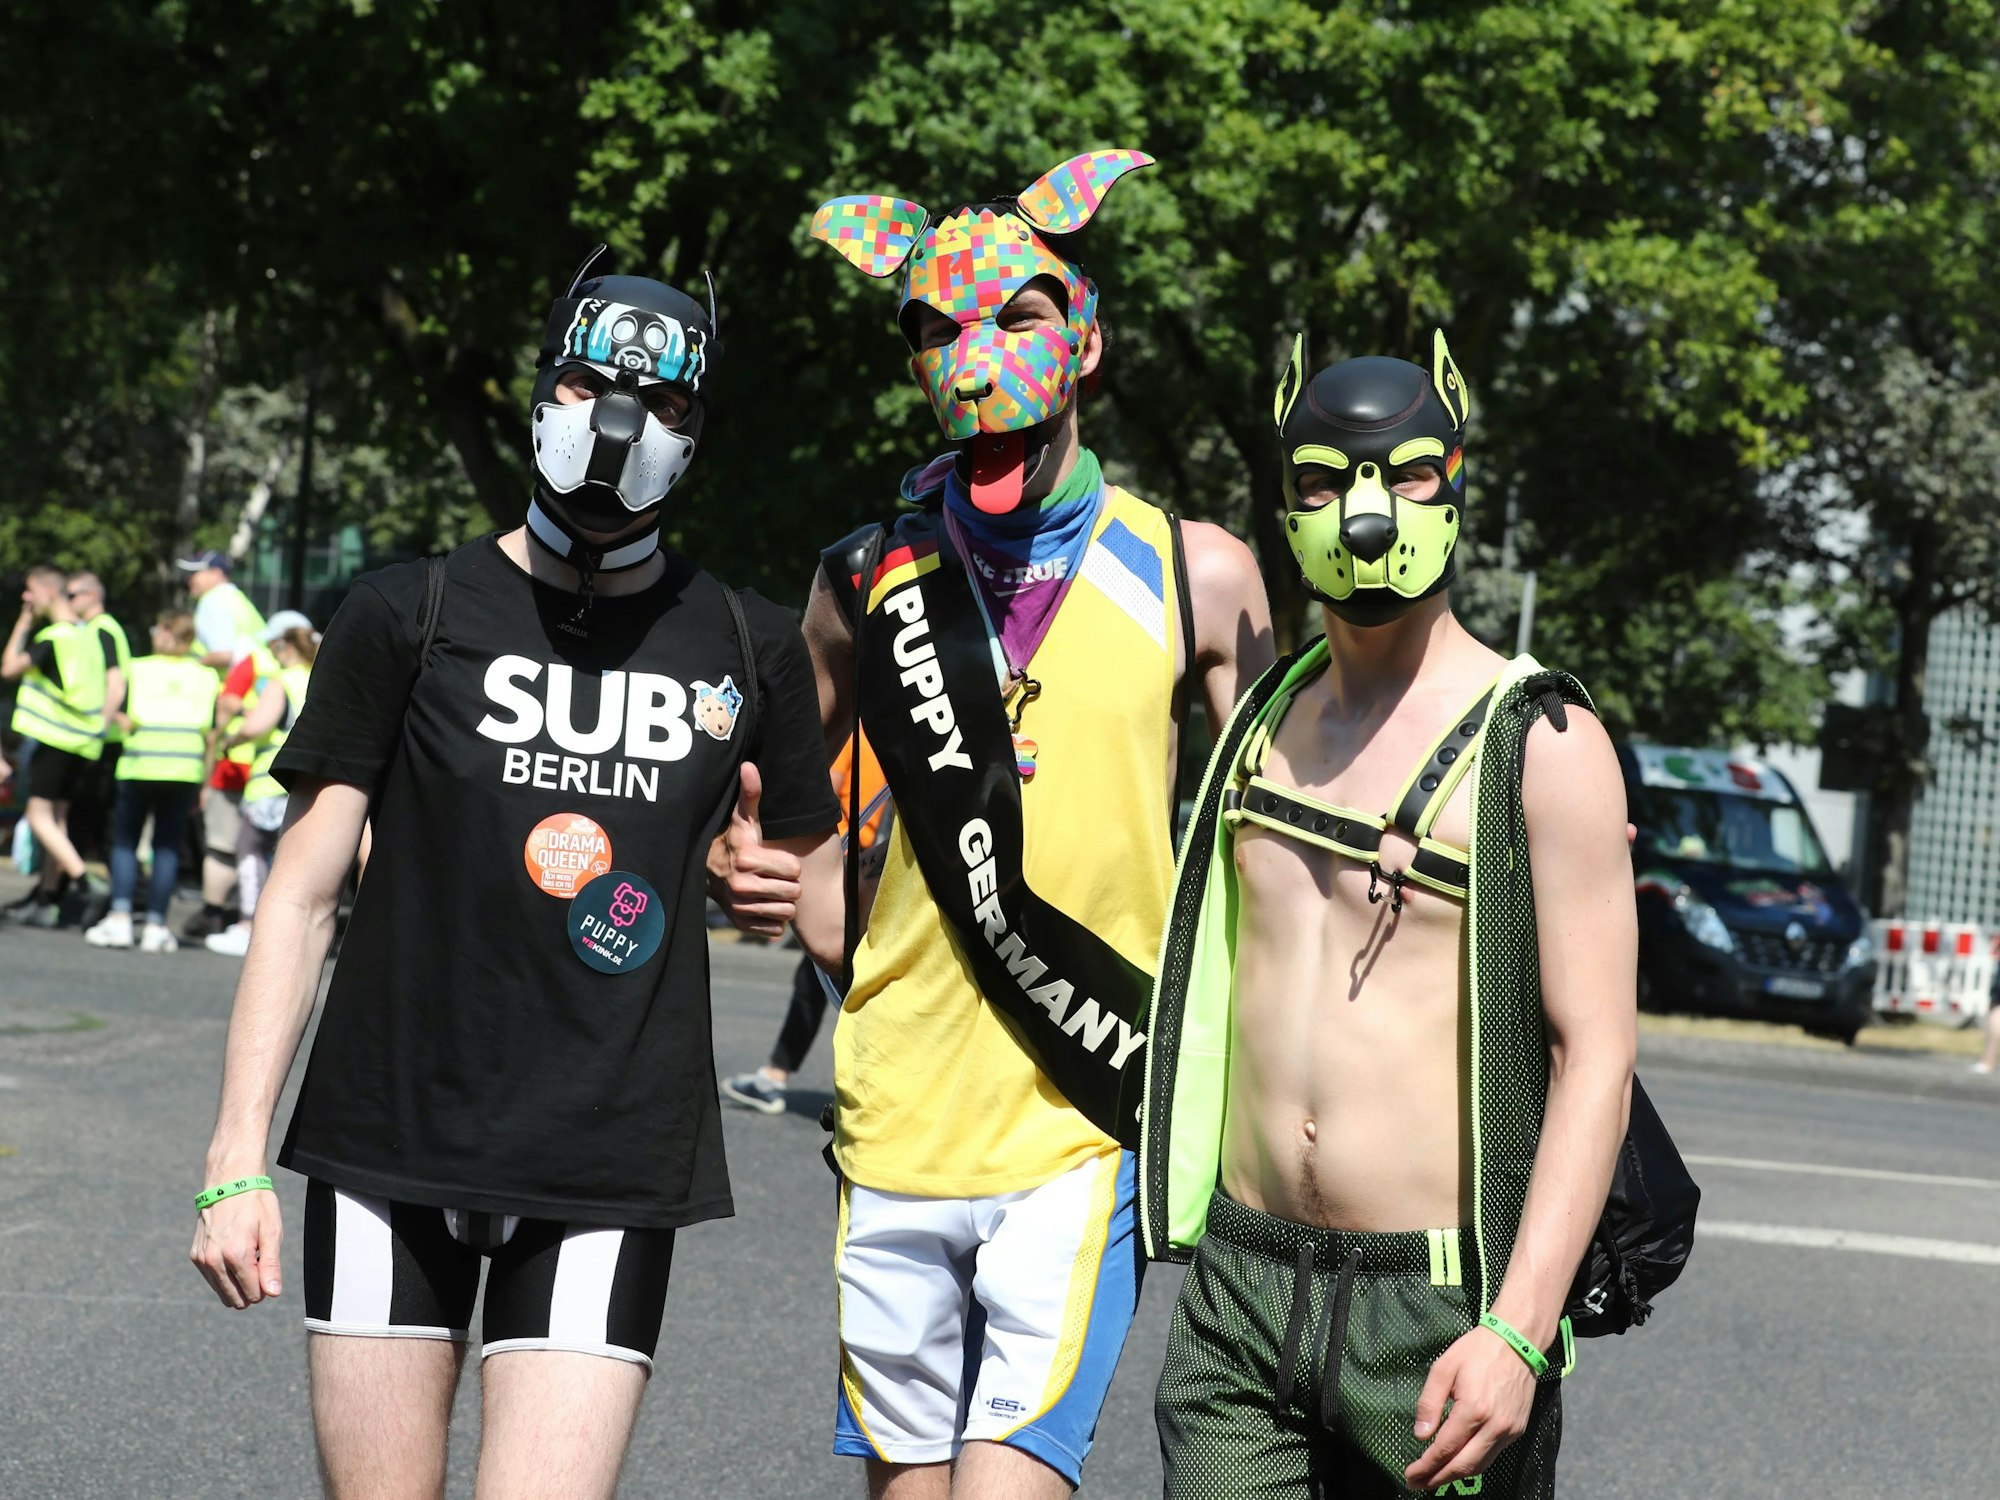 Drei Jungs amüsierten sich mit Puppy-Masken auf der CSD-Demo.

